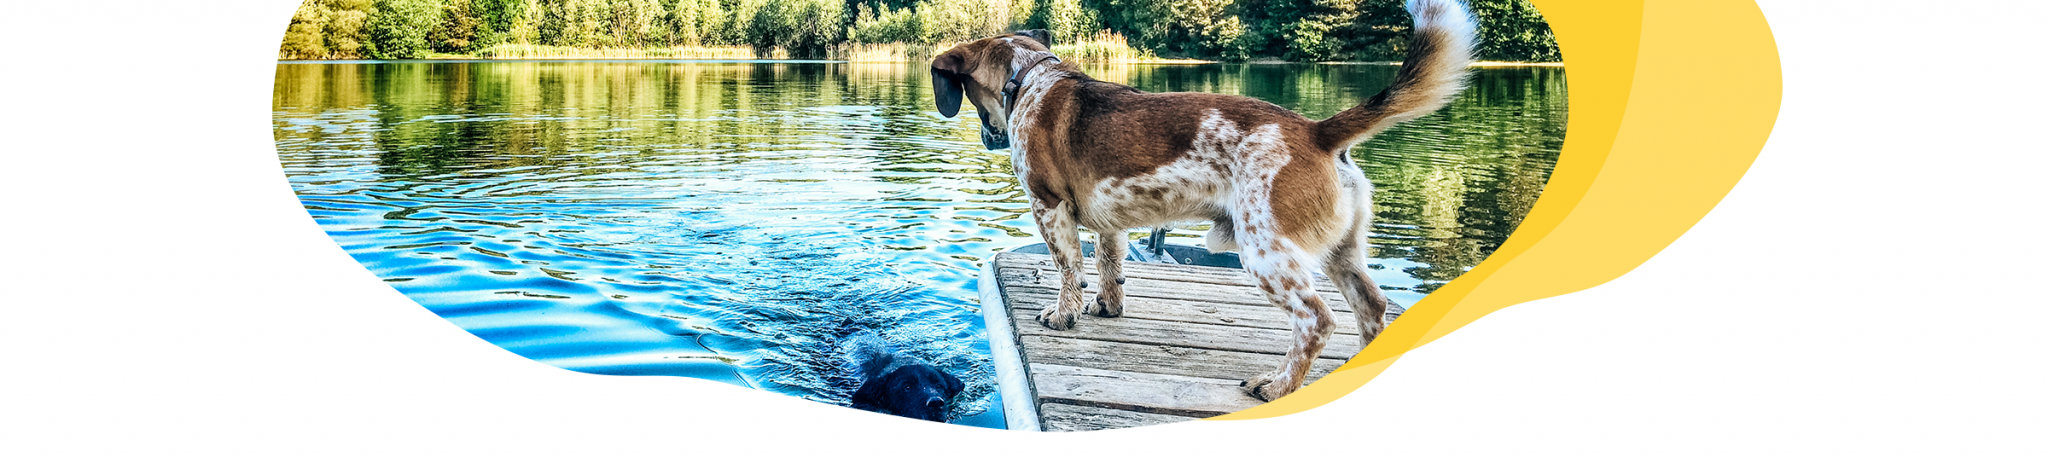 5 Ideen für Urlaub mit Hund am See TraumFerienwohnungen